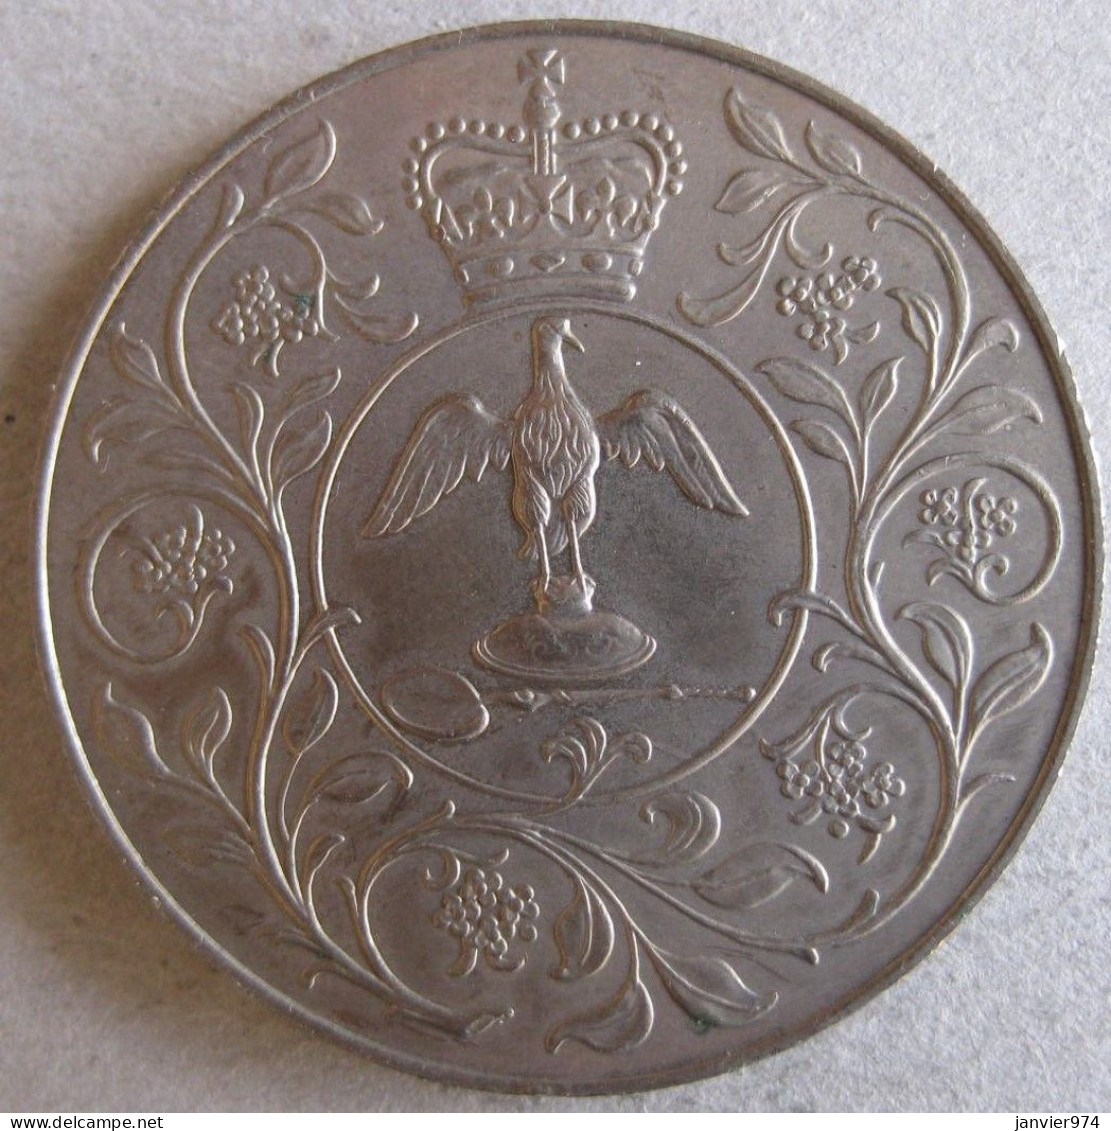 Royaume Unie Médaille Elizabeth II 1977, Pour Son Jubilé D'argent De Règne , En Cupro Nickel. - Royaux/De Noblesse